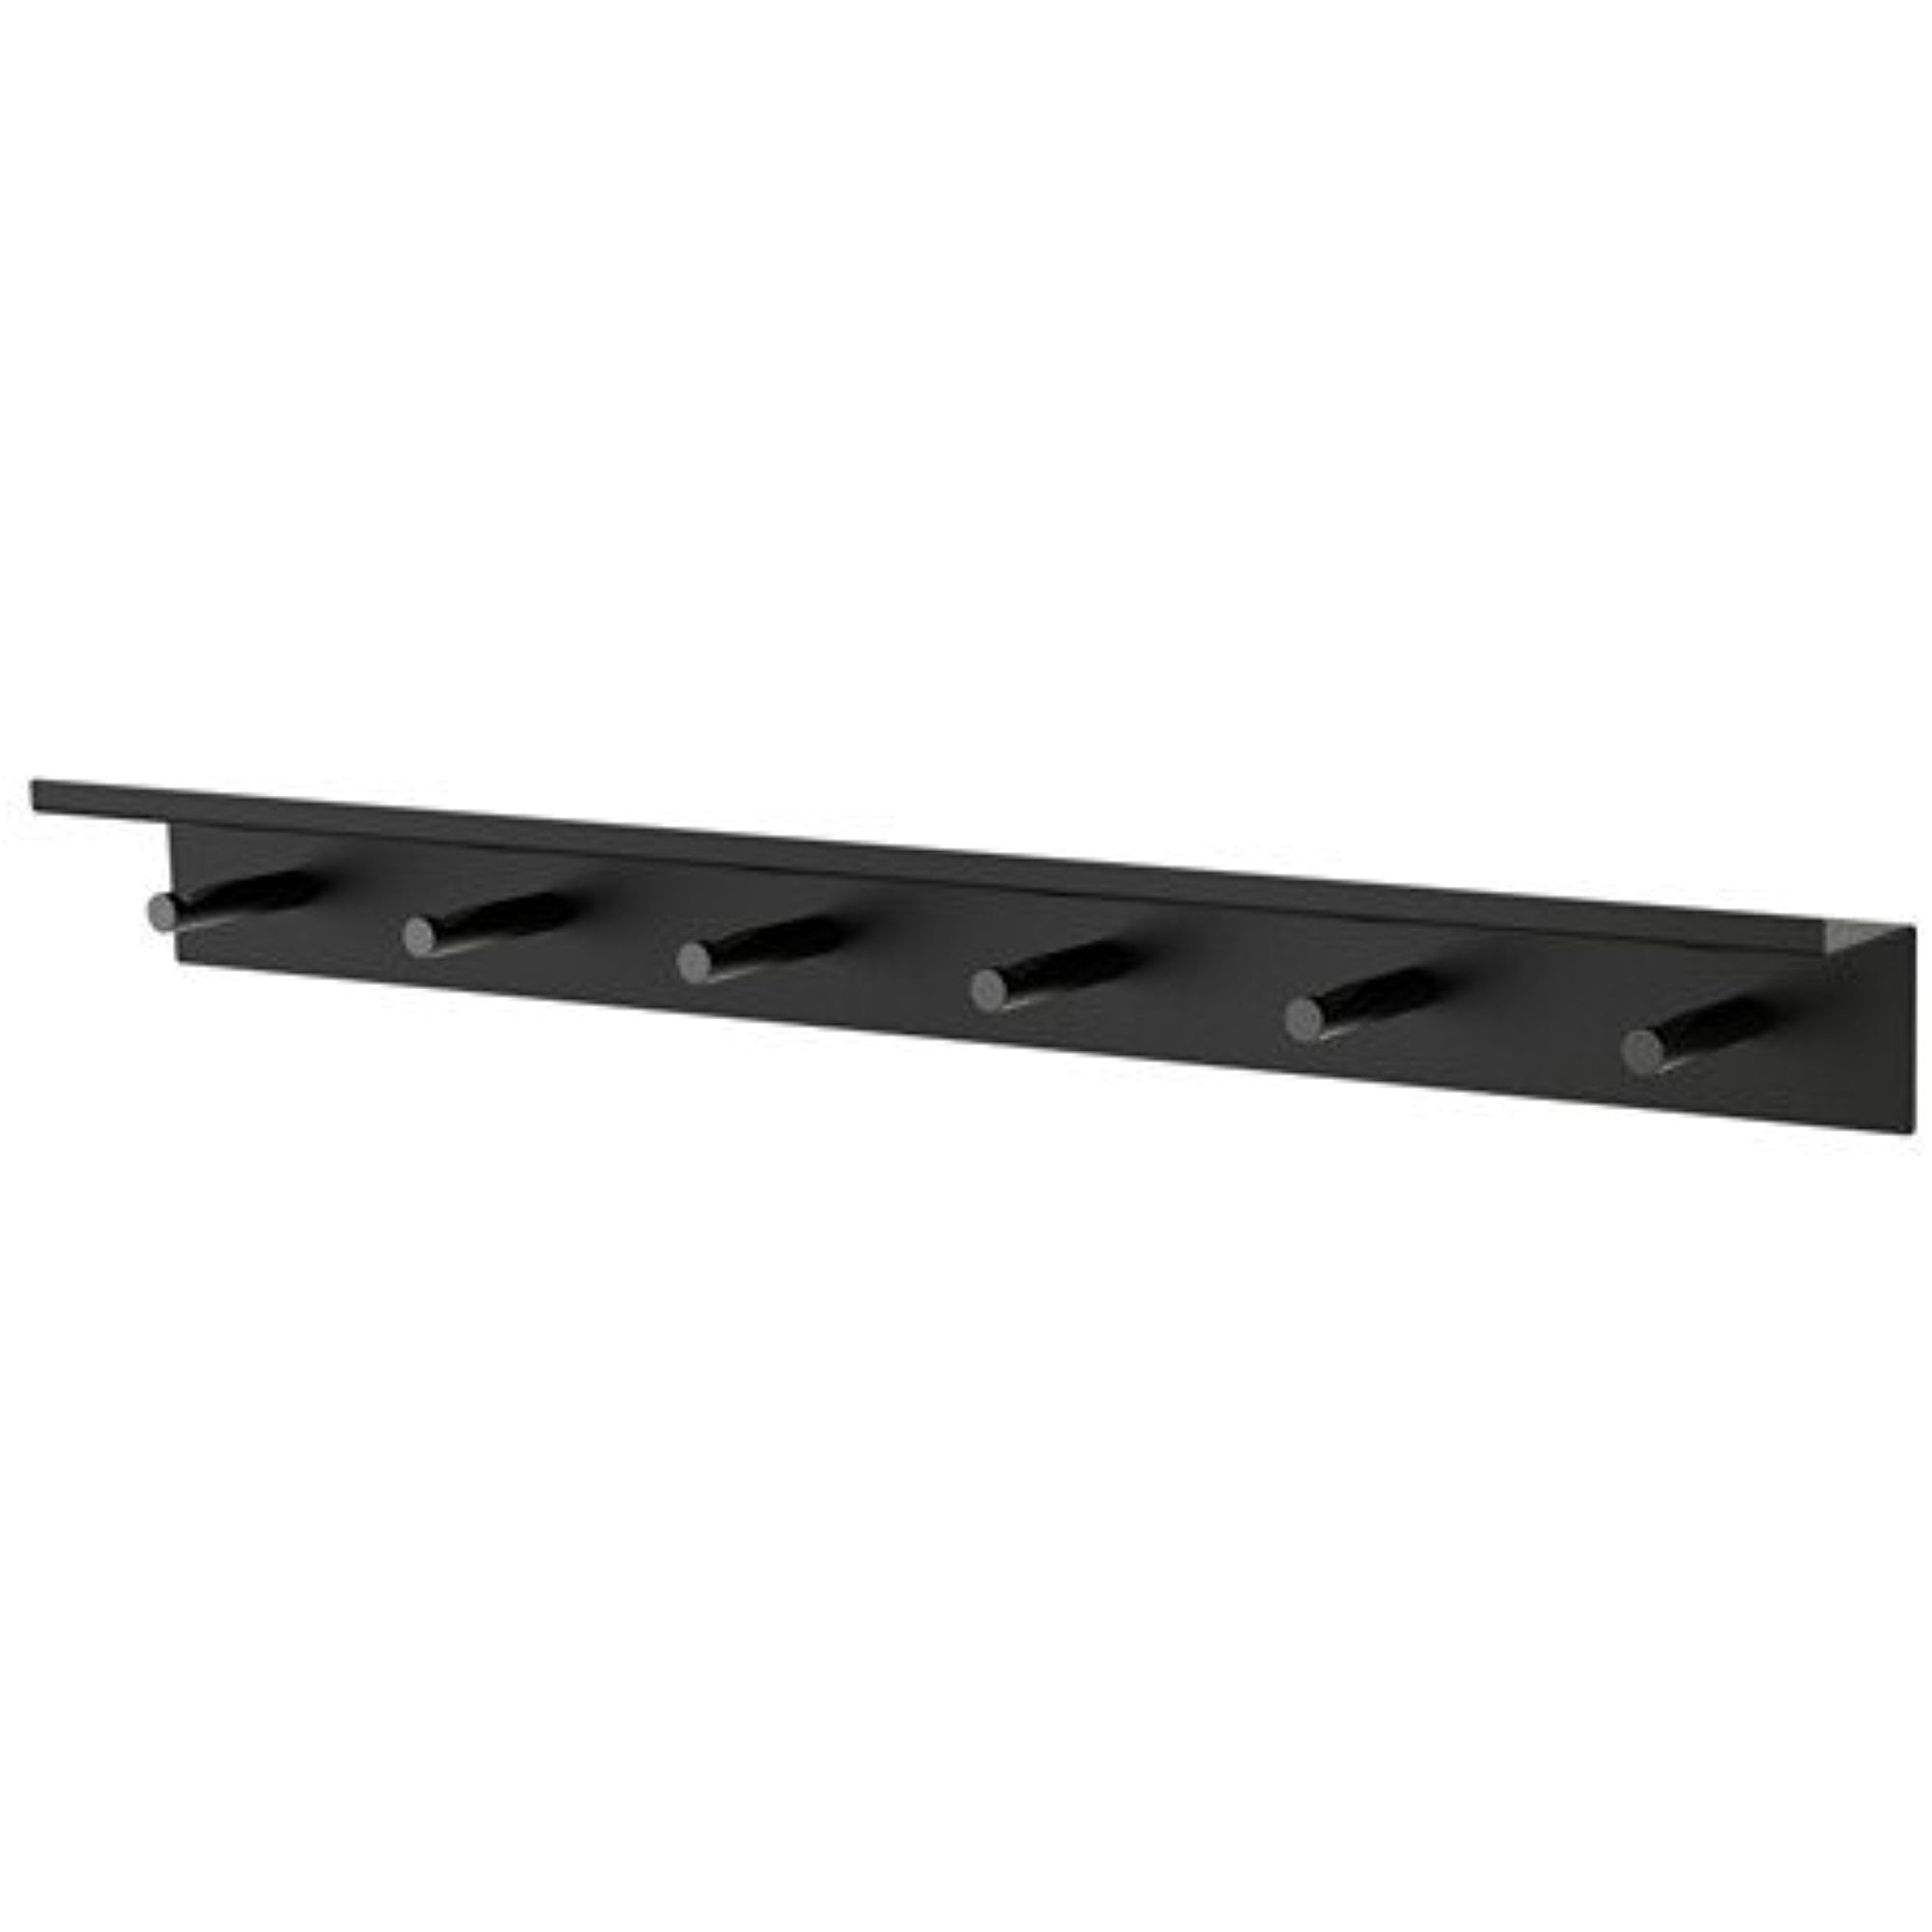 Ikea Wall rail with hooks 34214.51726.1818 - Walmart.com